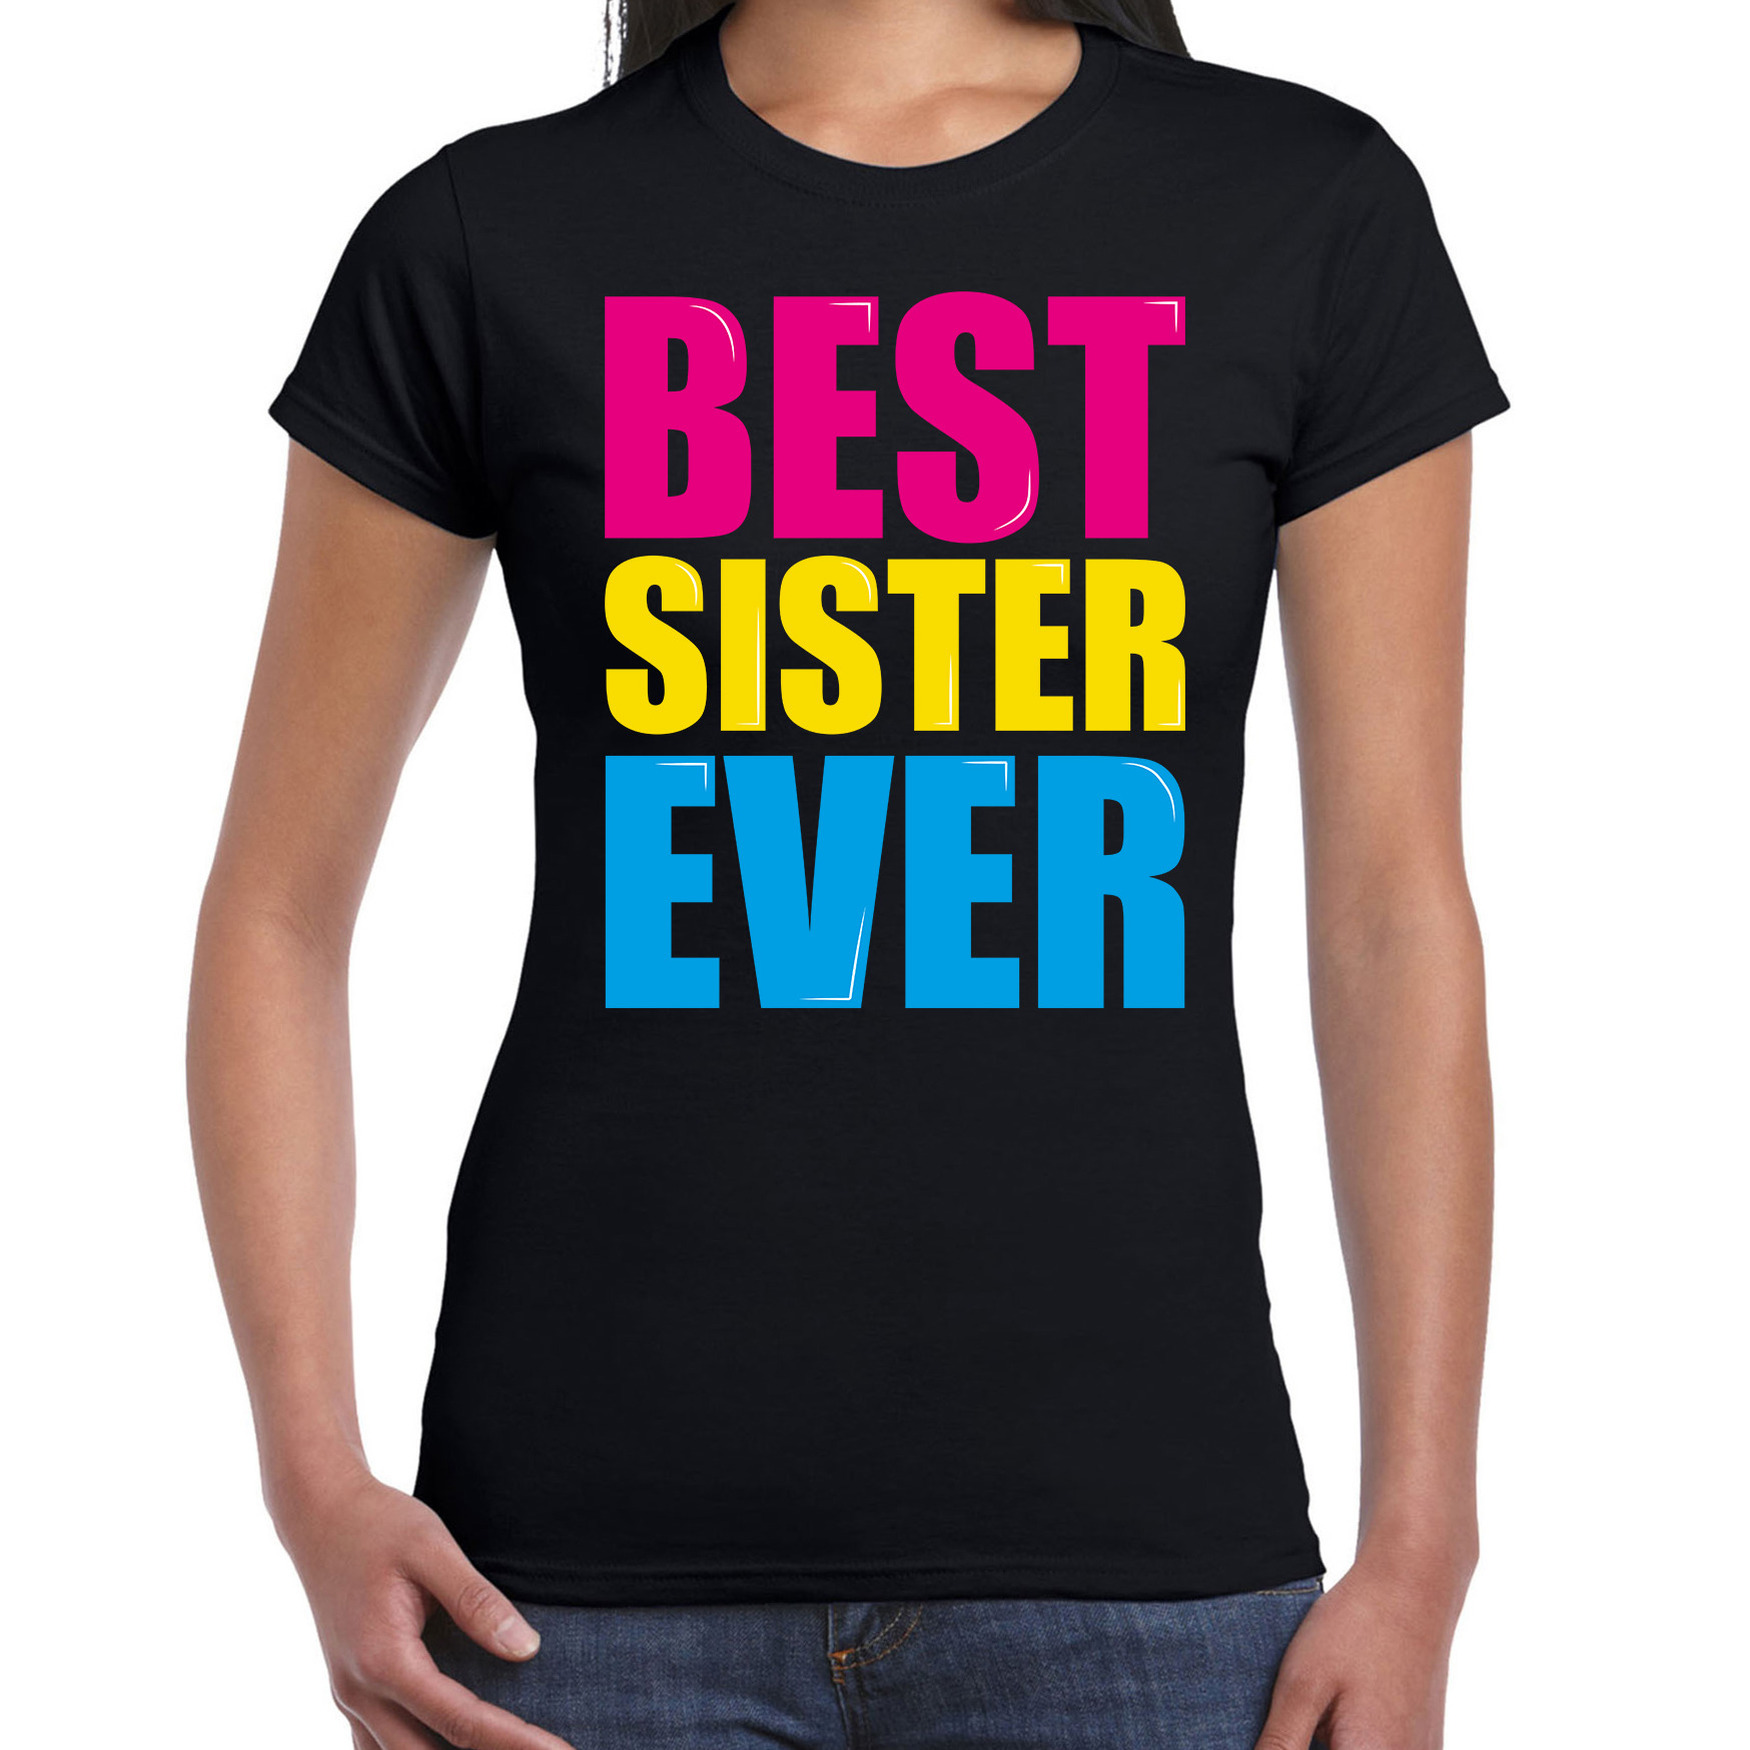 Best sister ever-Beste zus ooit fun t-shirt zwart dames